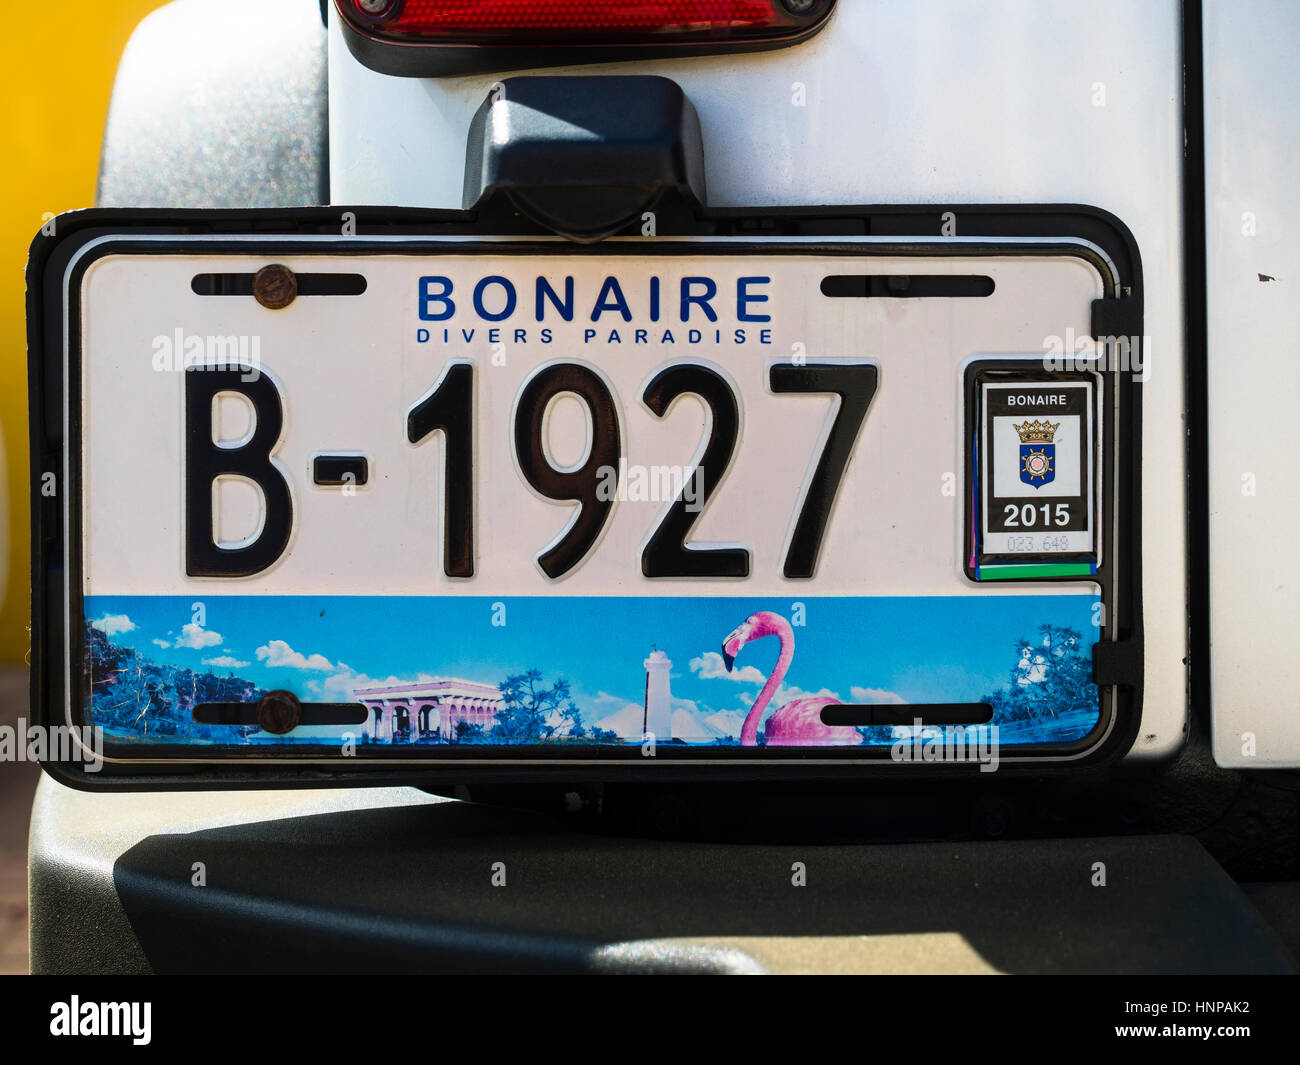 Kfz-Kennzeichen von einem Auto, Kralendijk, Bonaire Insel Bonaire, Niederländische Antillen Stockfoto